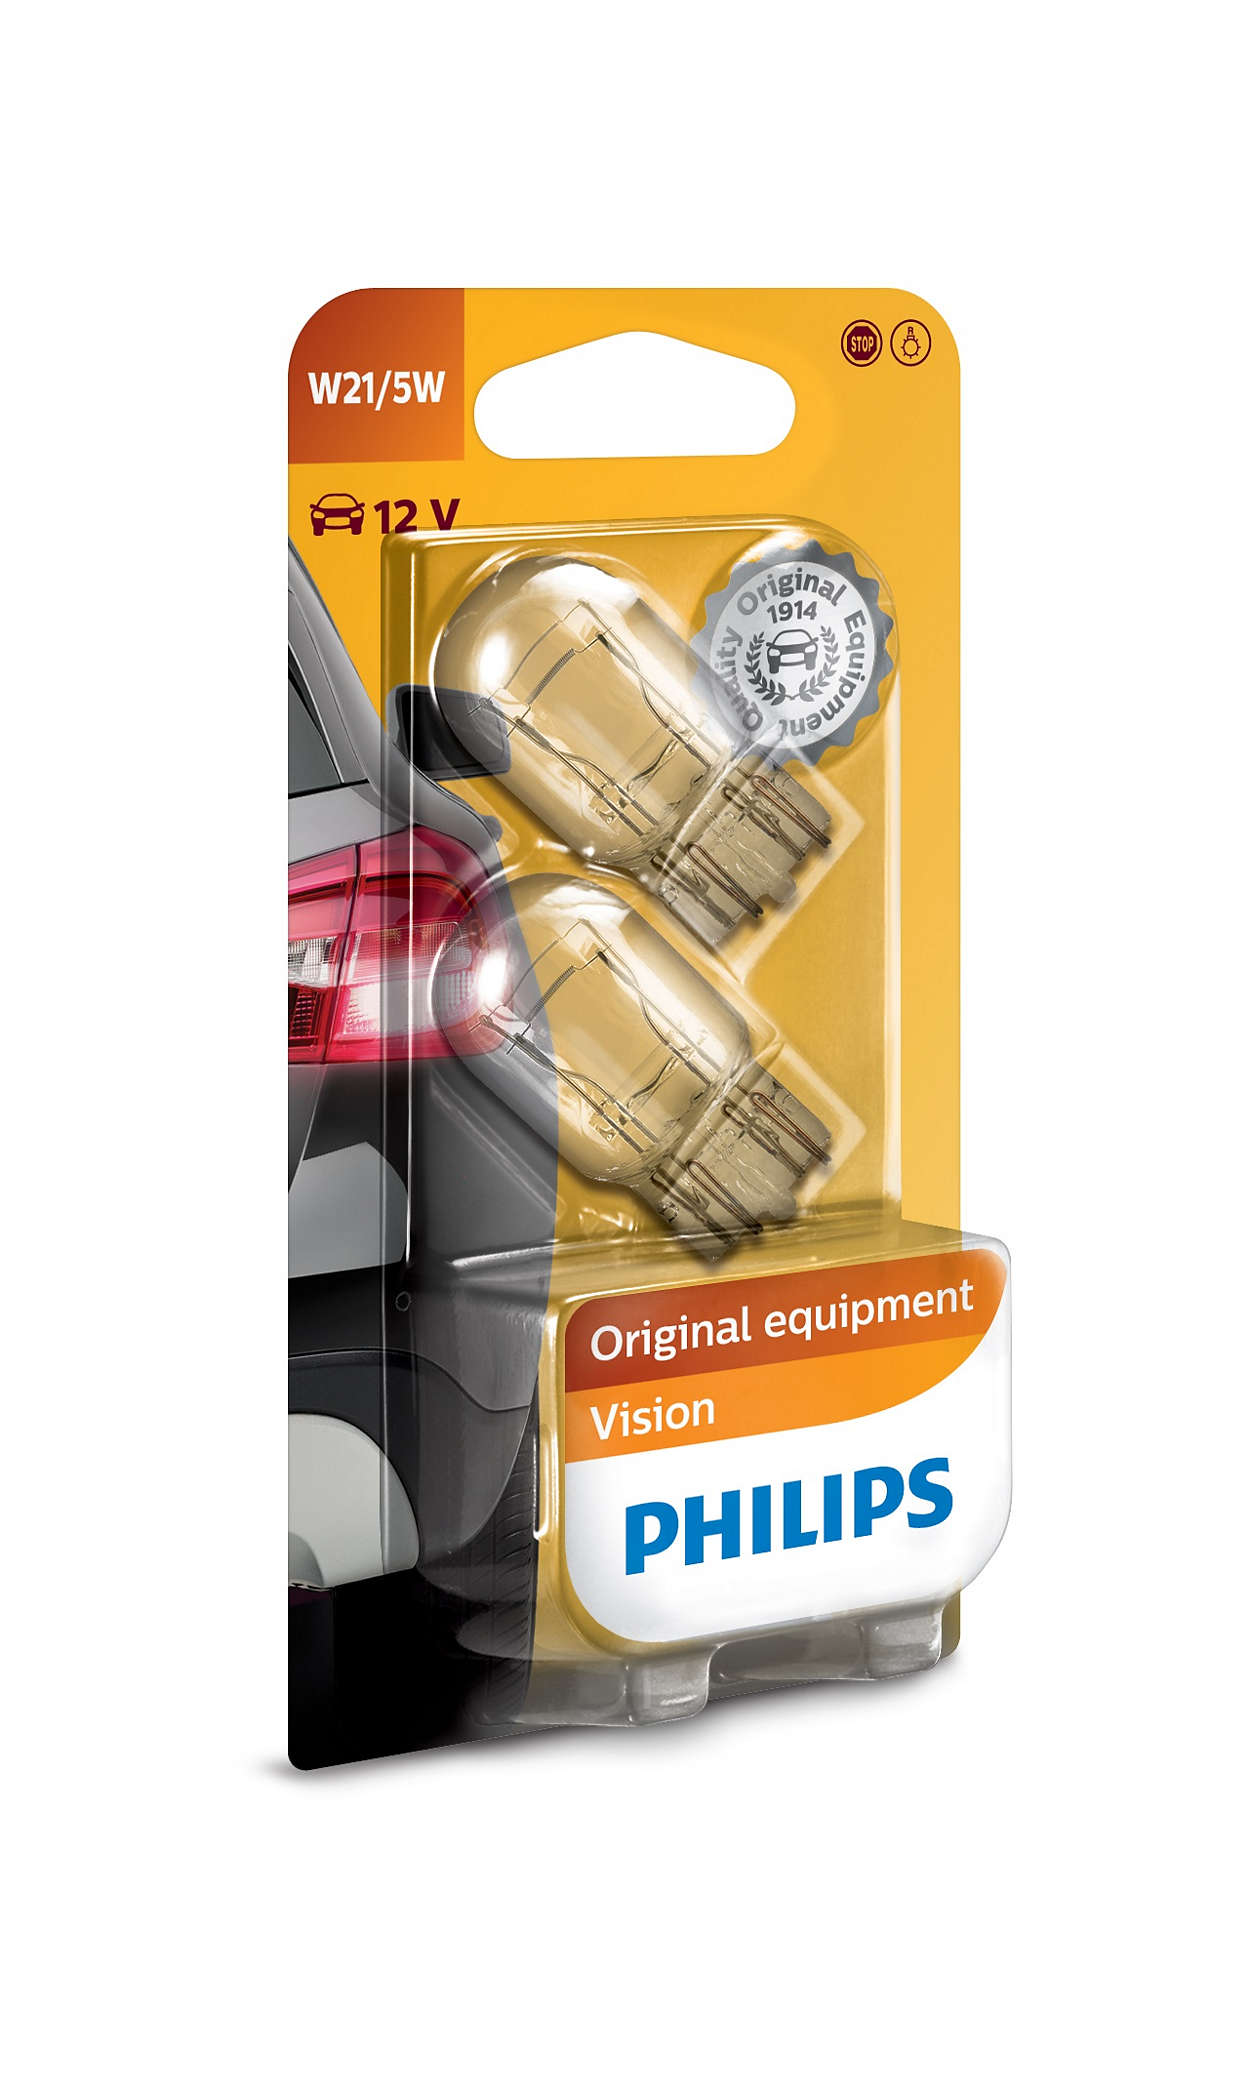 Philips W21/5W 12V - Original - Set